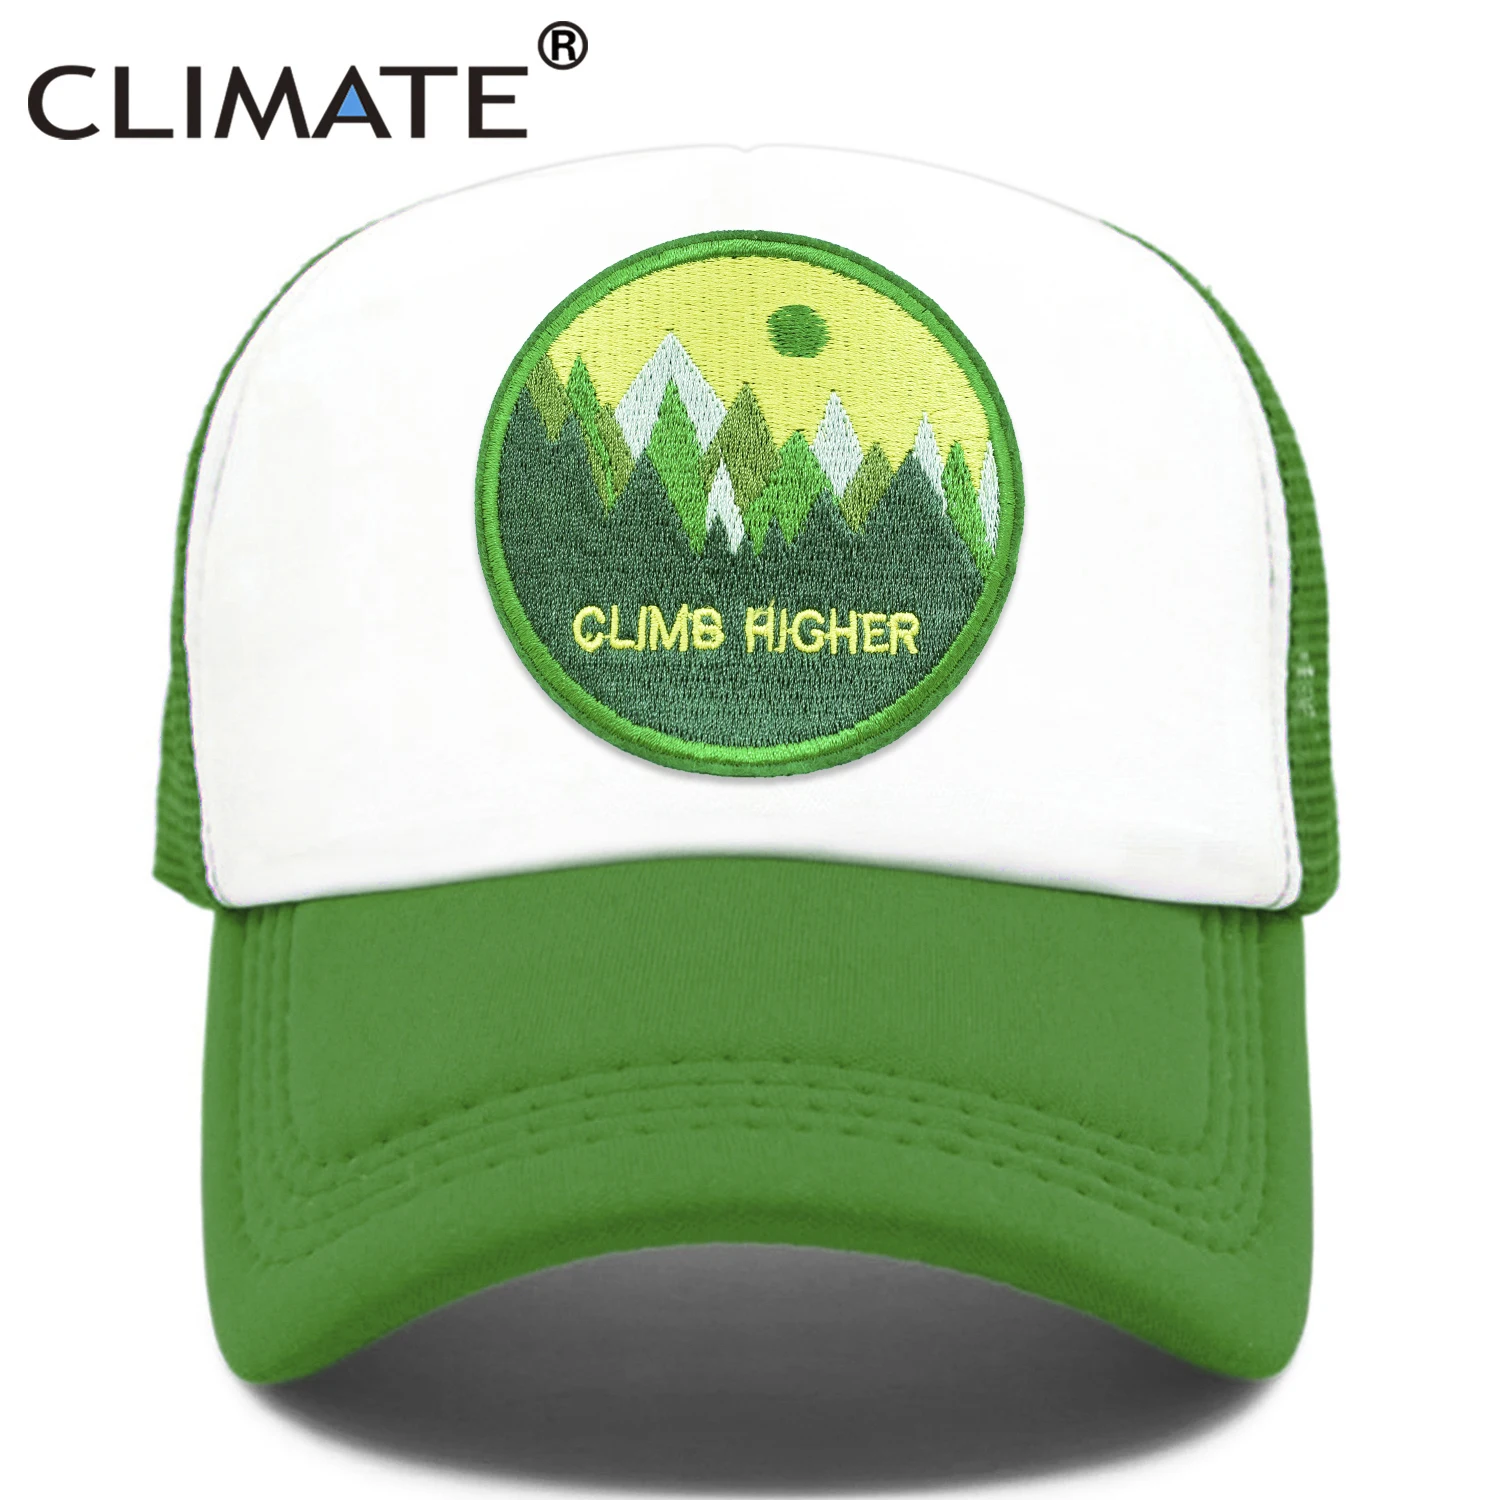 

CLIMATE CLIMB HIGH Cap Climber Outdoor Sport Trucker Cap Green Outdoors Forest Hat Cap Cool Summer Mesh Cap for Men Women